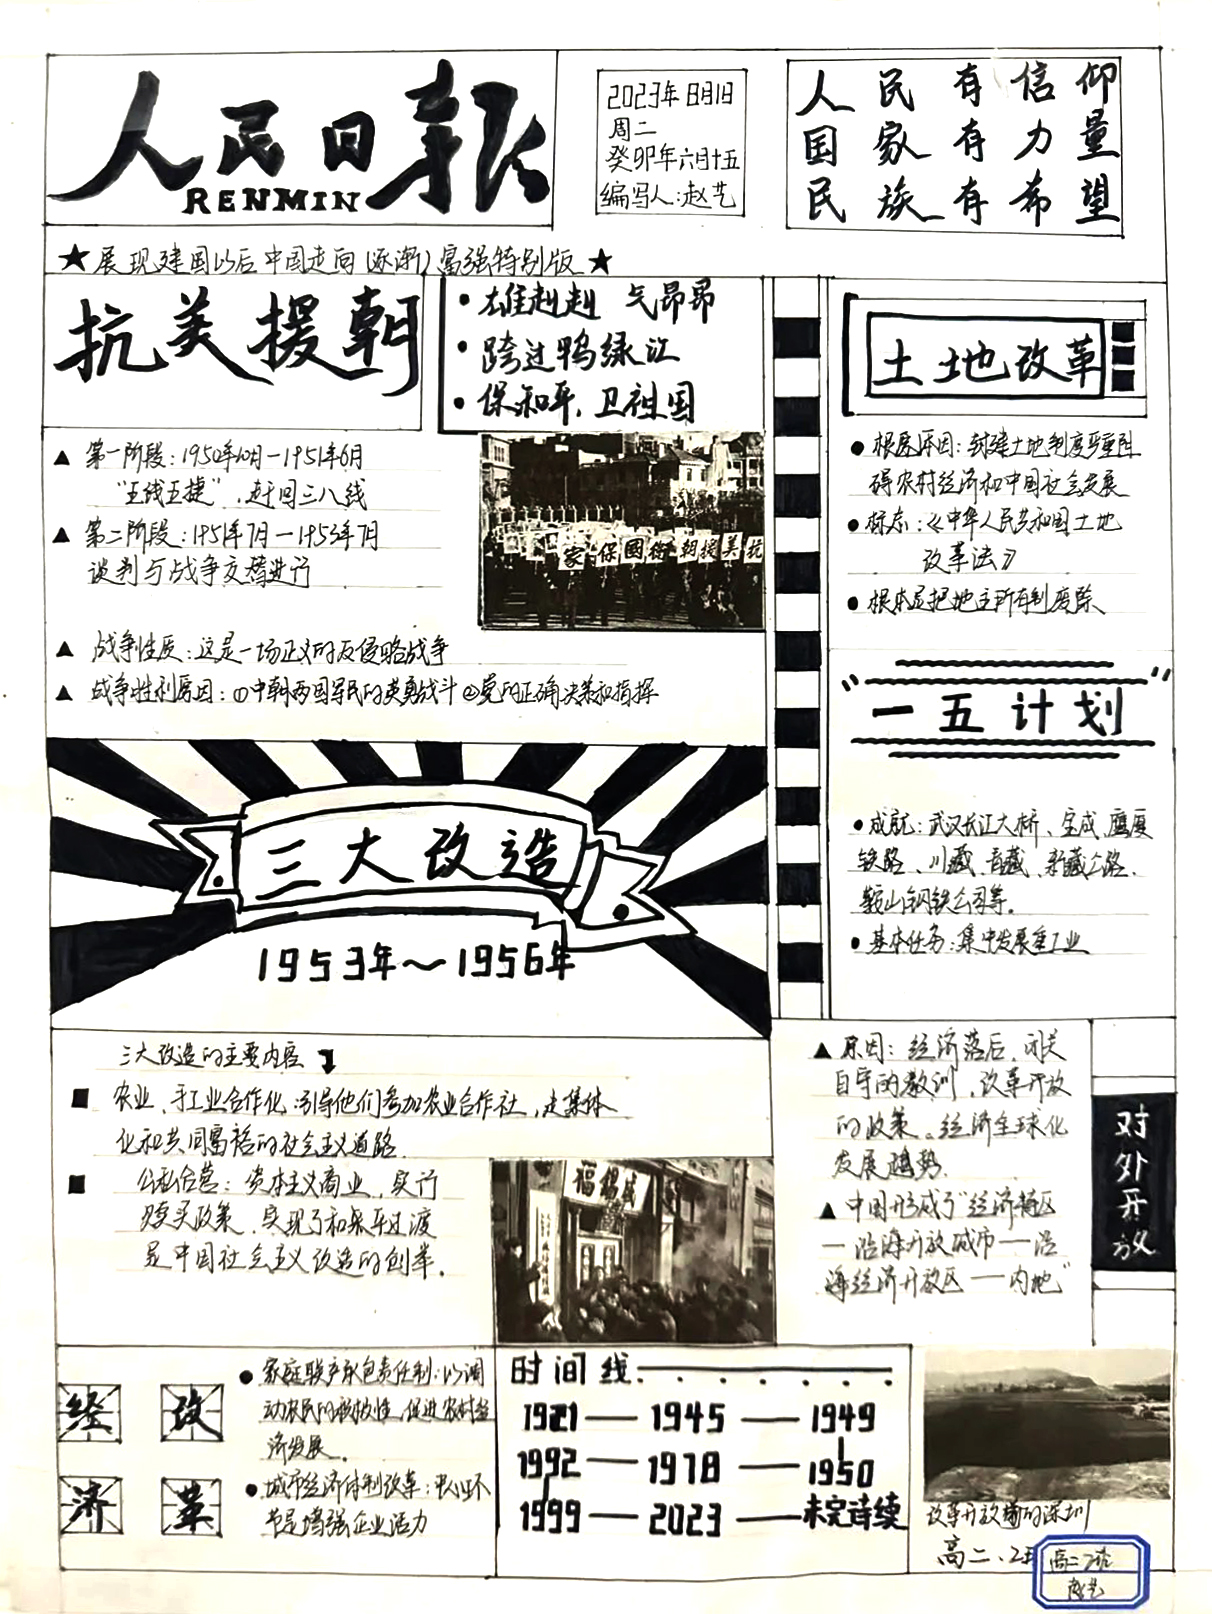 1953-1956三大改造 高二历史思维导图